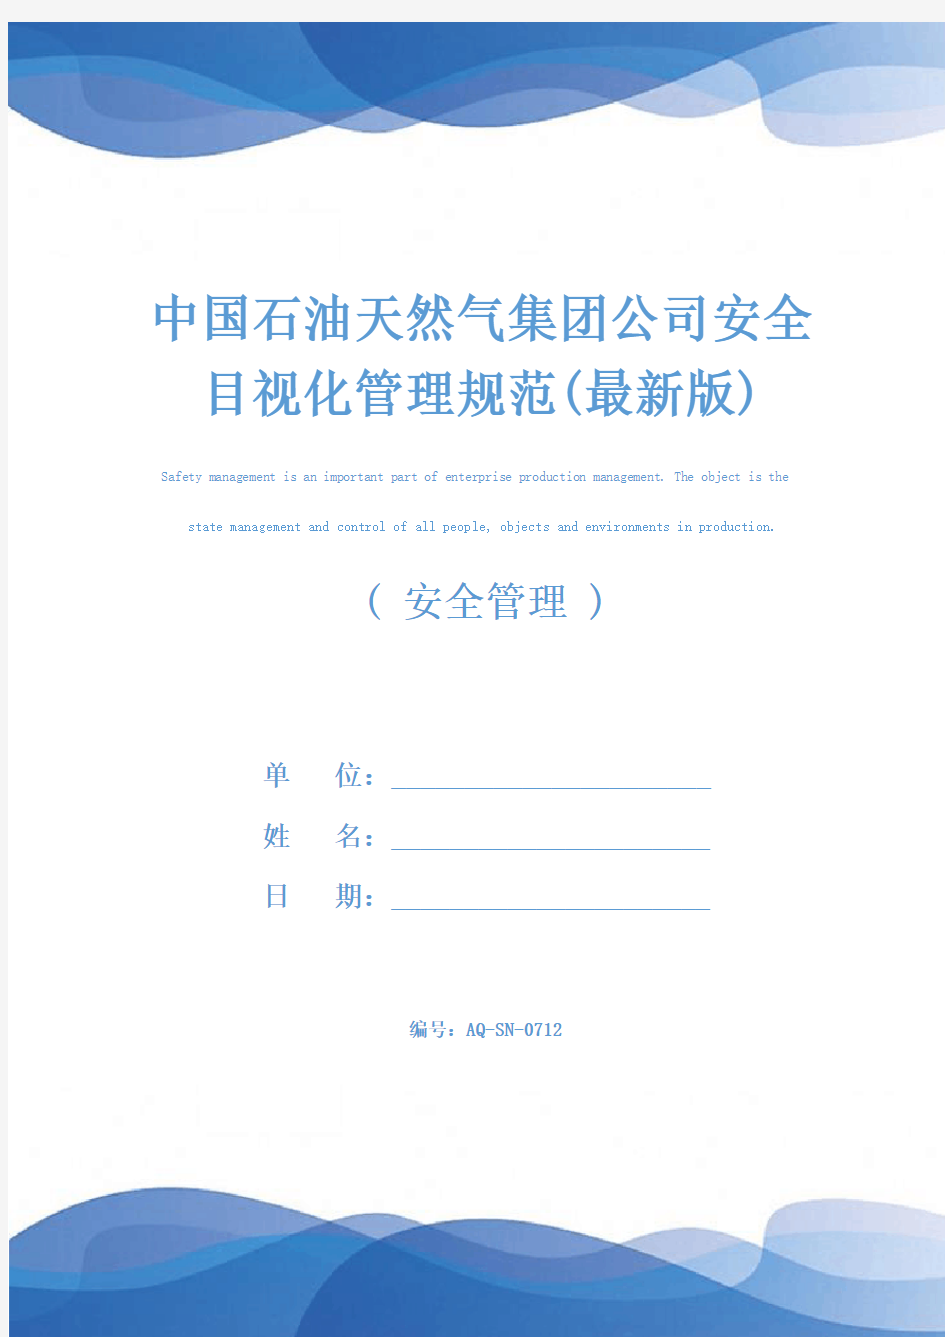 中国石油天然气集团公司安全目视化管理规范(最新版)